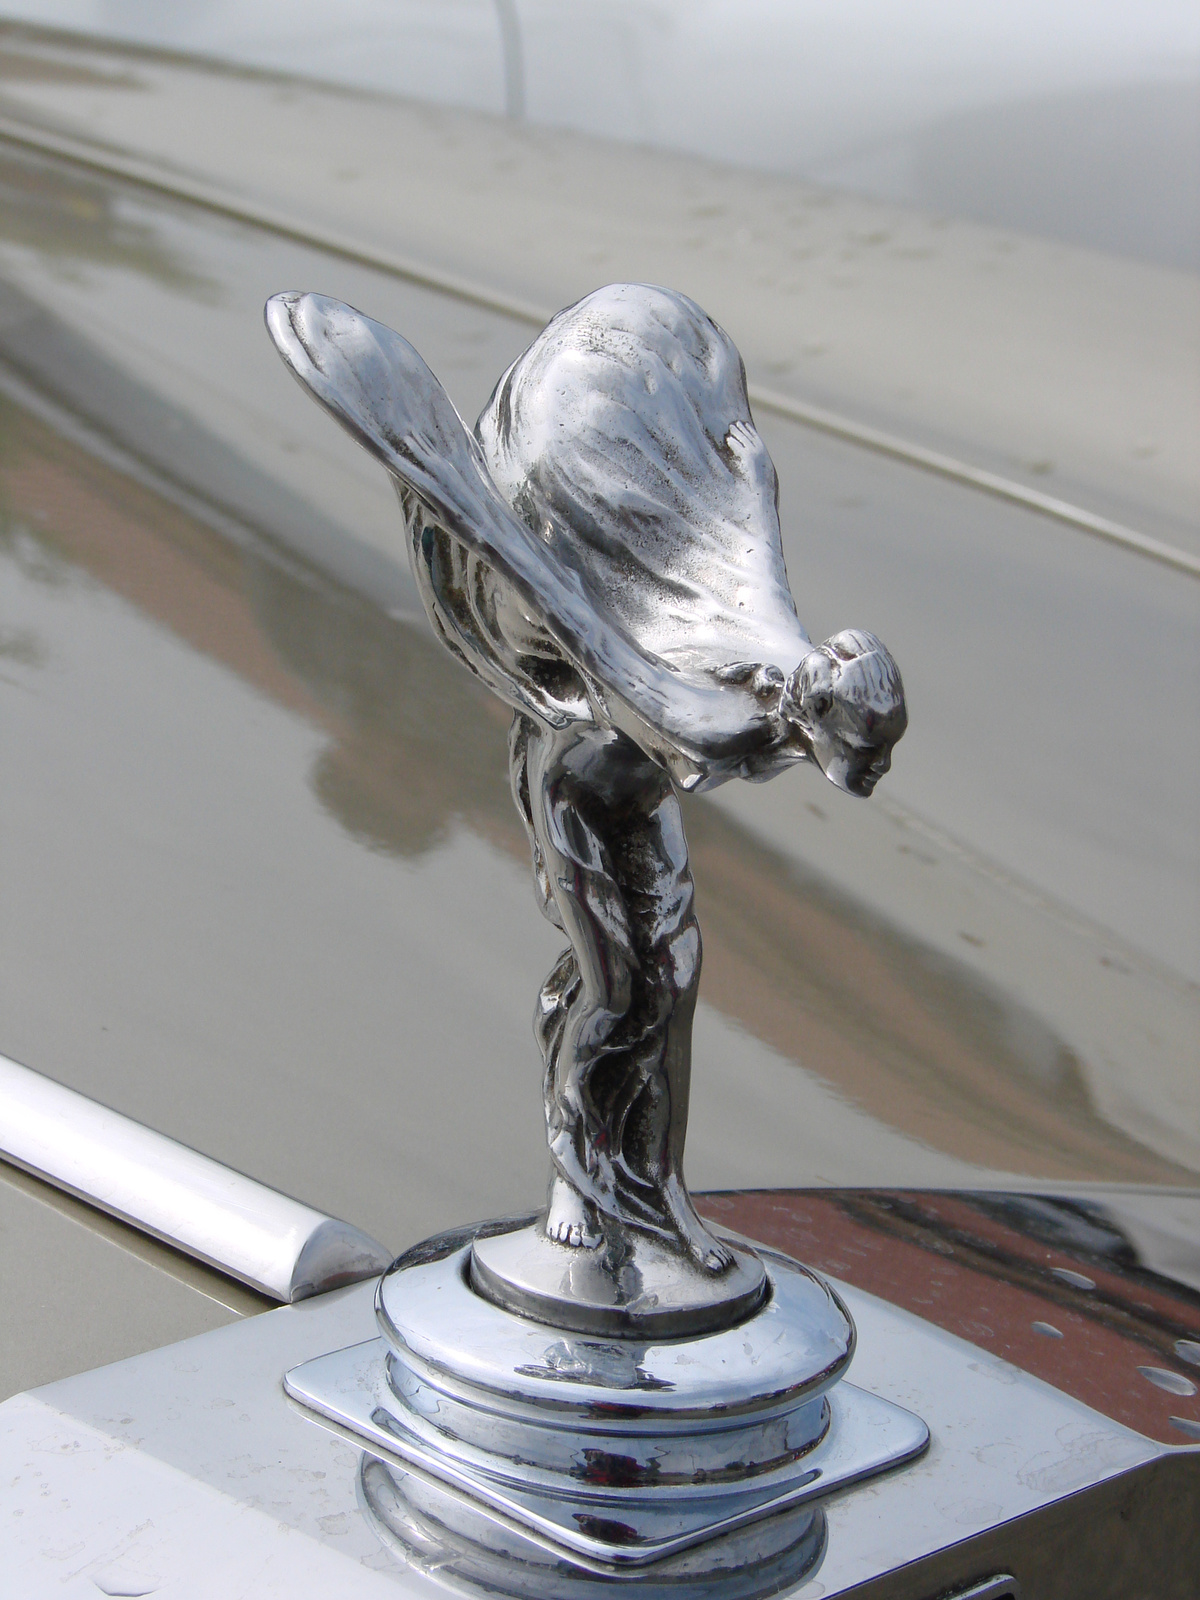 Rolls-Royce Silver Shadow I